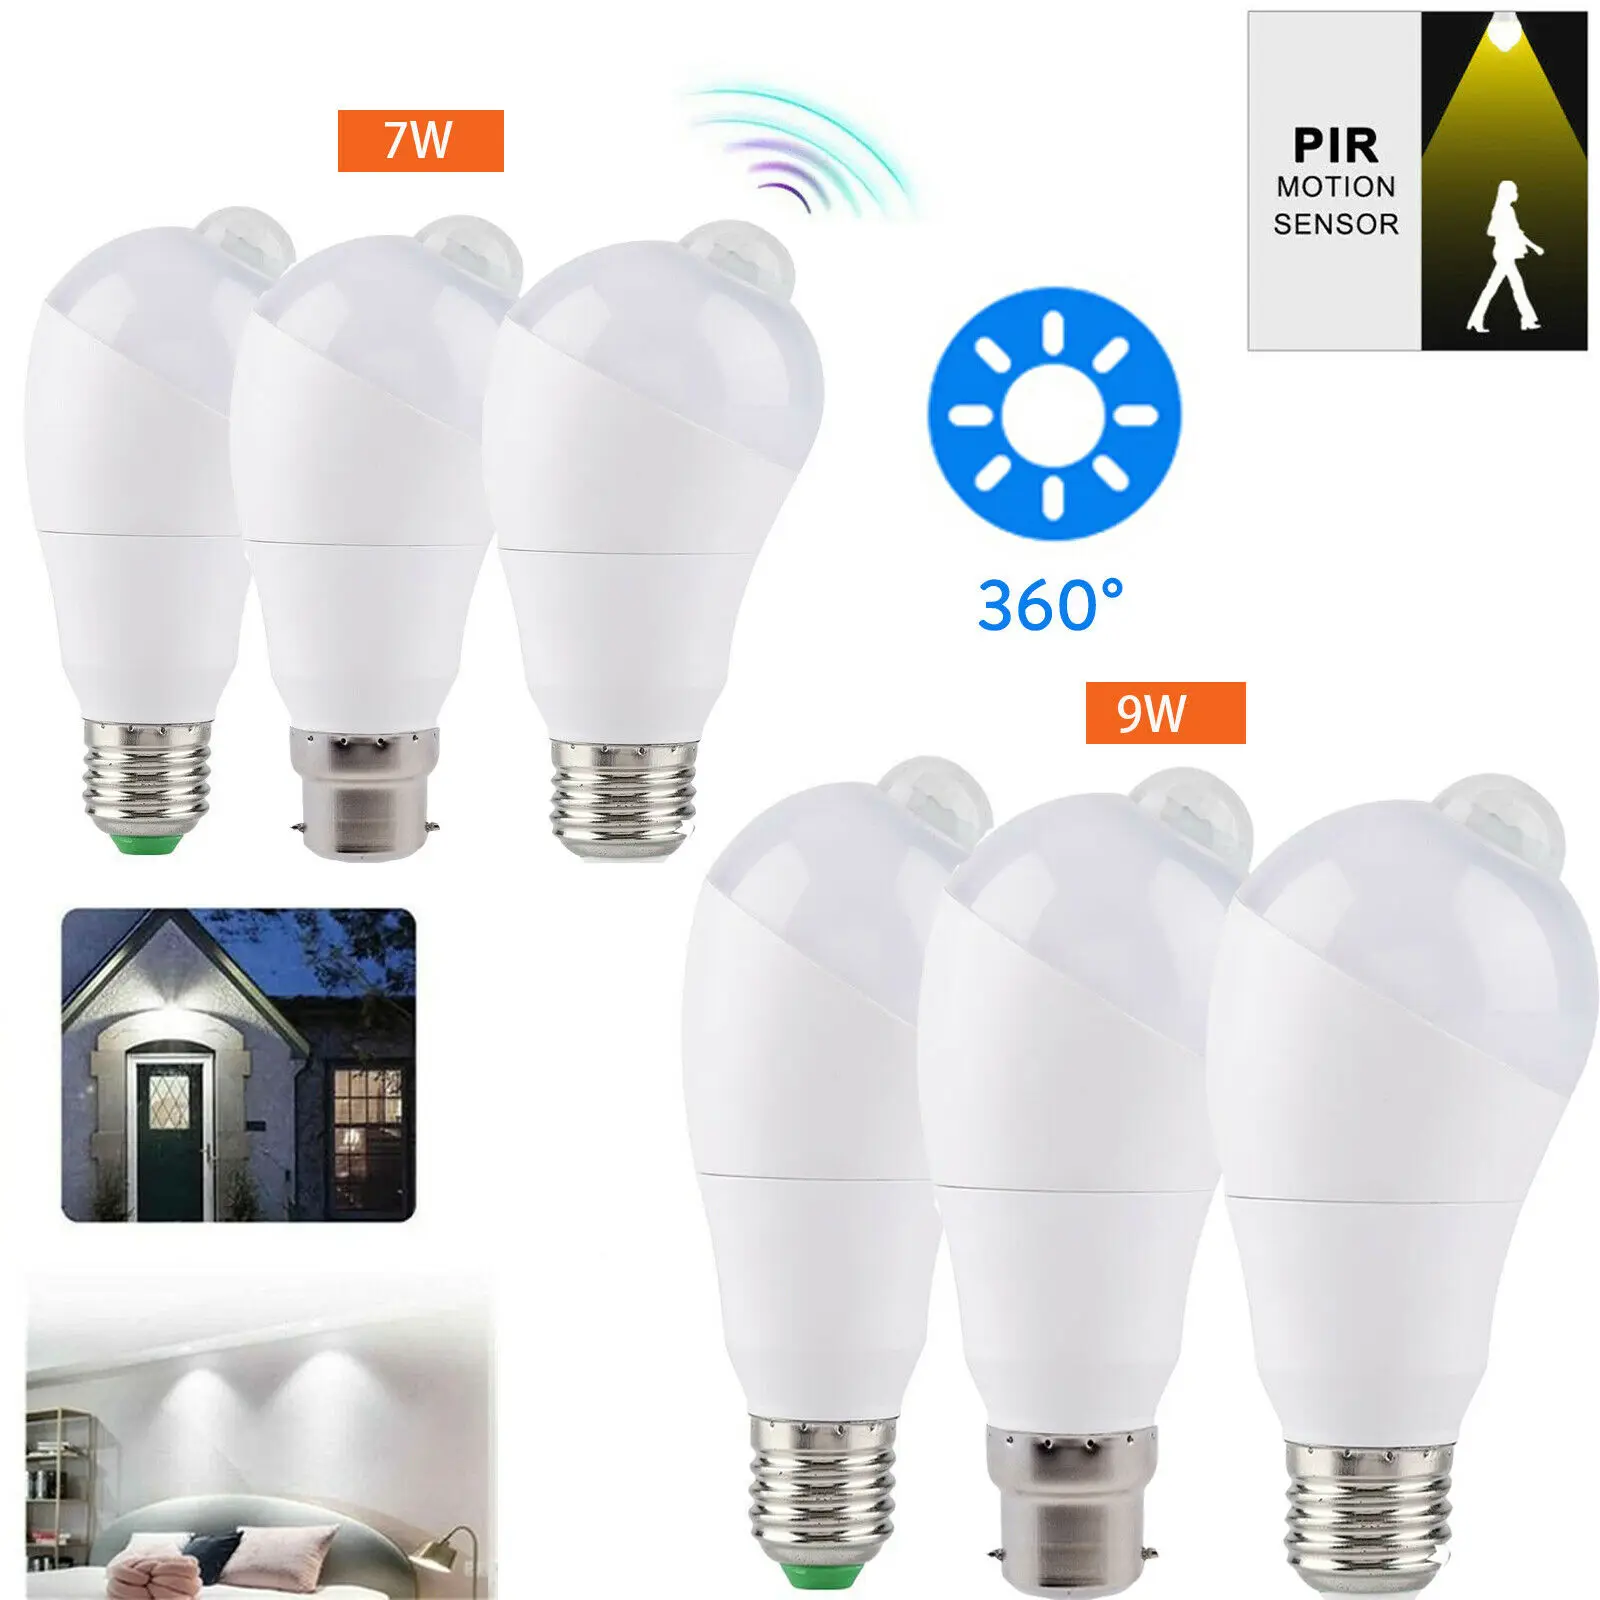 

PIR LED Motion Sensor Light Bulb 5W 7W E27 B22 Rotate Infrared For Corridor Cold Warm White Home Light